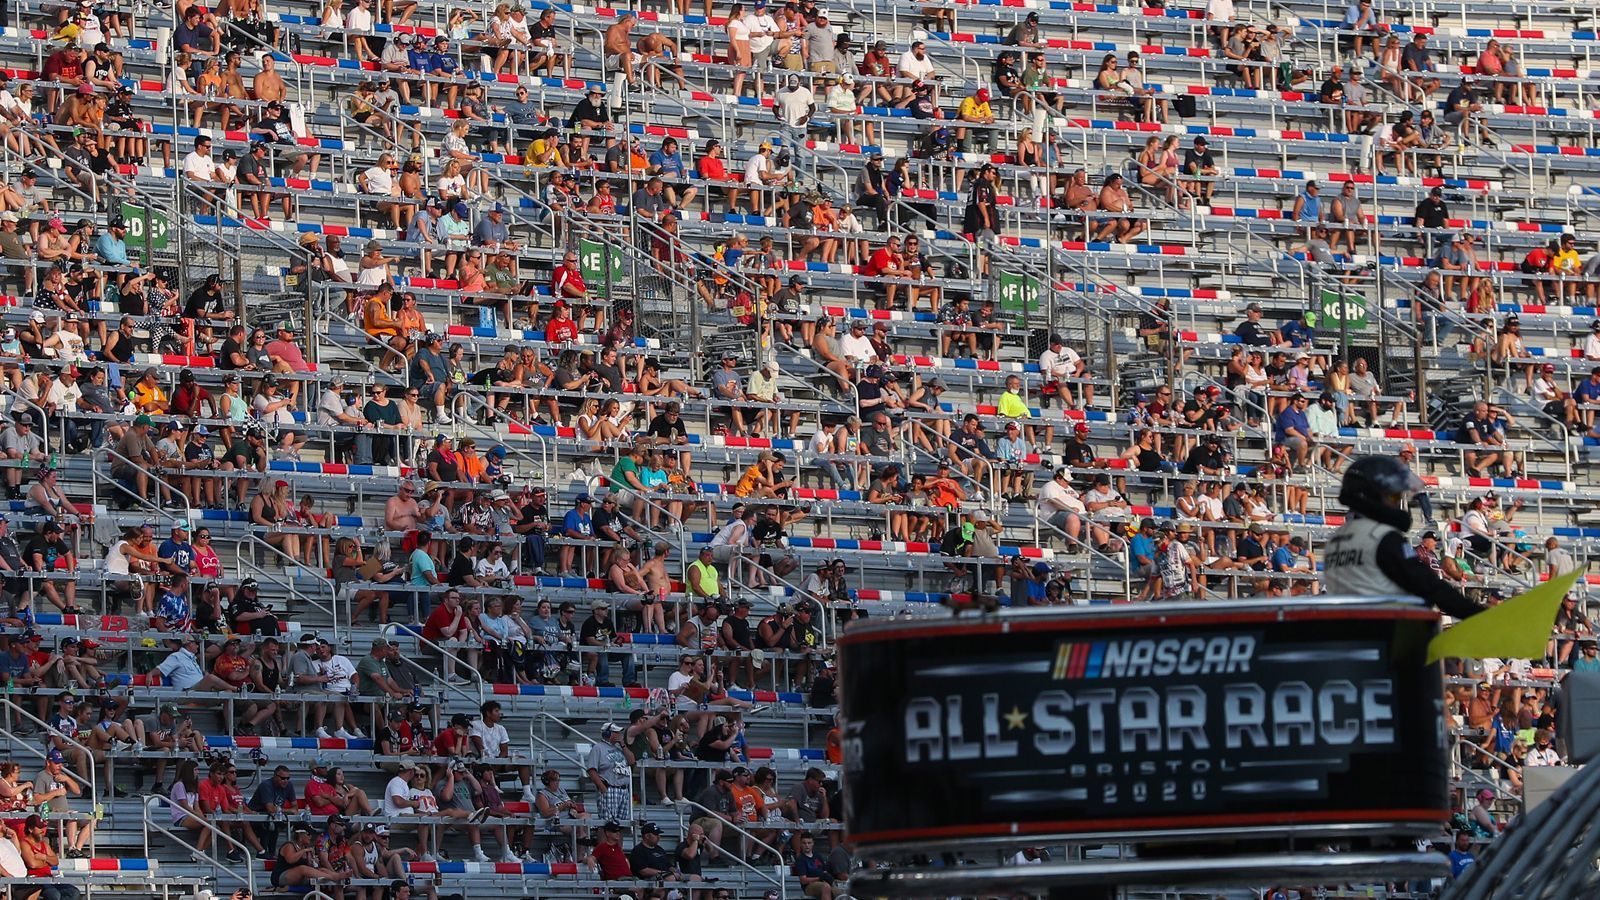 
                <strong>Trotz Coronavirus-Alarm: 20.000 Fans bei der NASCAR</strong><br>
                Jetzt ging in Bristol im US-Bundesstaat Tennessee ein NASCAR-Rennen Medienberichten zufolge vor rund 20.000 Zuschauern über die Bühne, exakte Zahlen wurden von den Organisatoren nicht bekanntgegeben. Bei der Veranstaltung handelte es sich um das All-Star-Race.
              